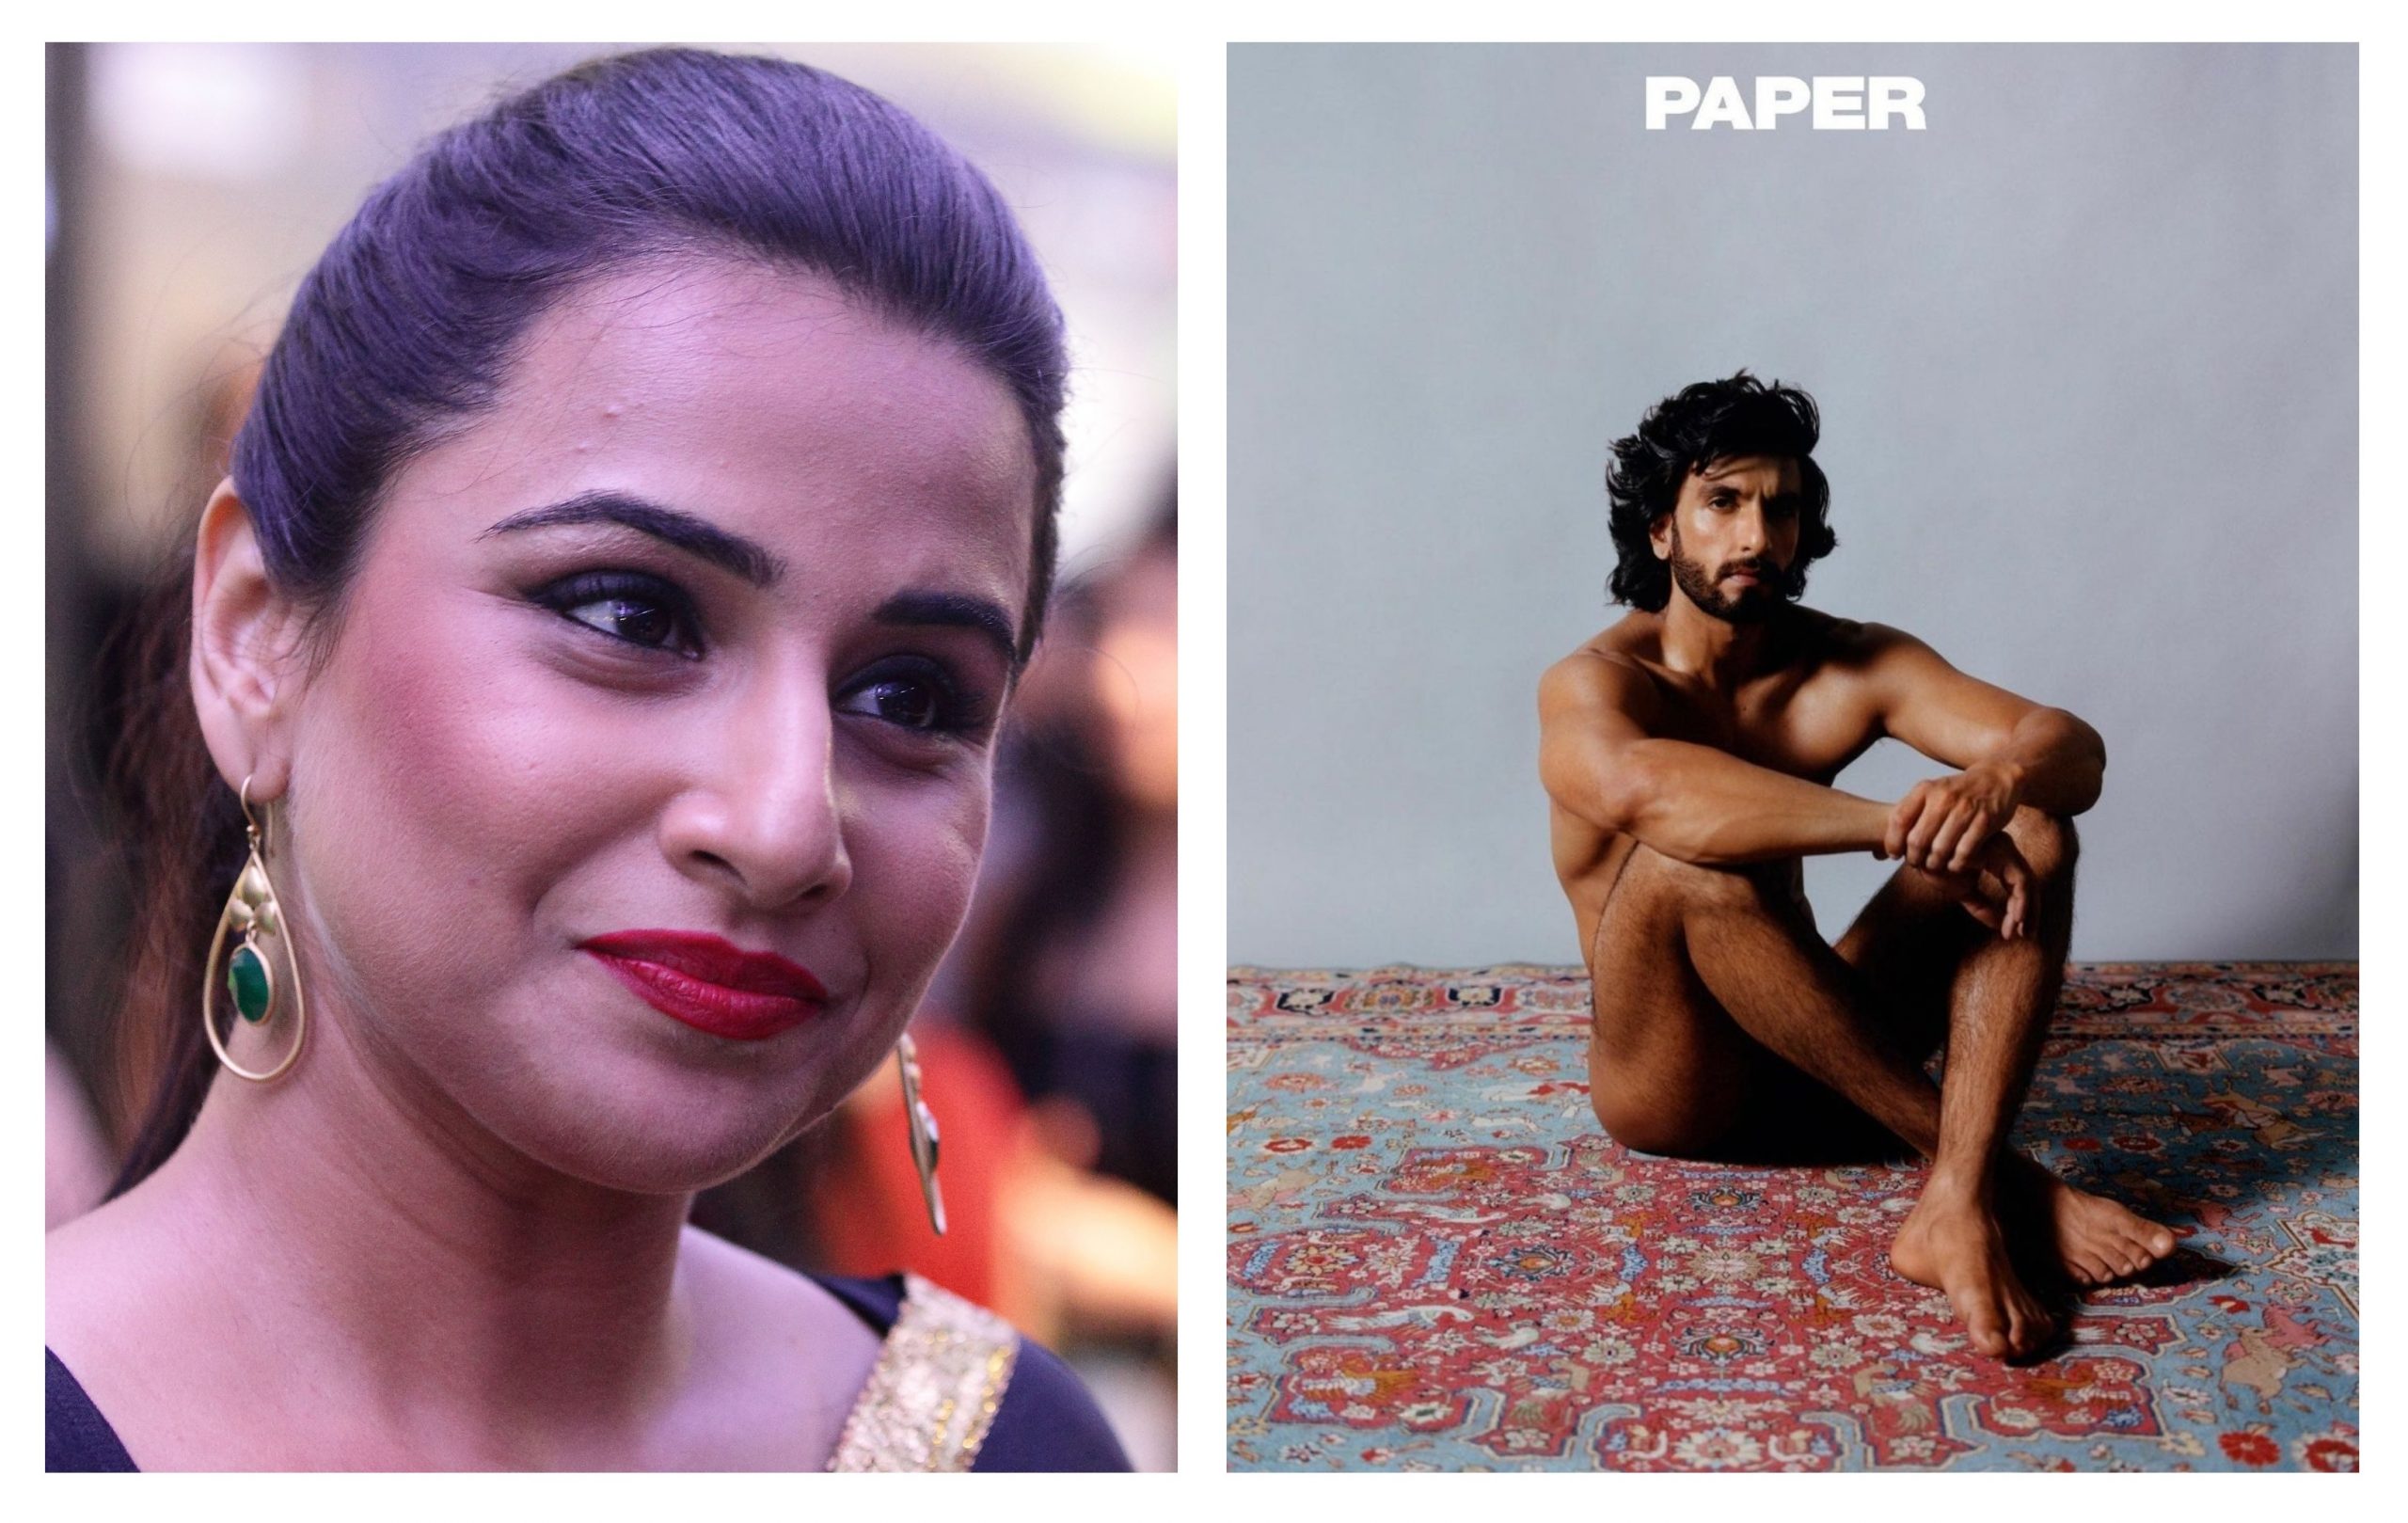 Let us also feast our eyes': Vidya Balan on Ranveer Singh's nude ...